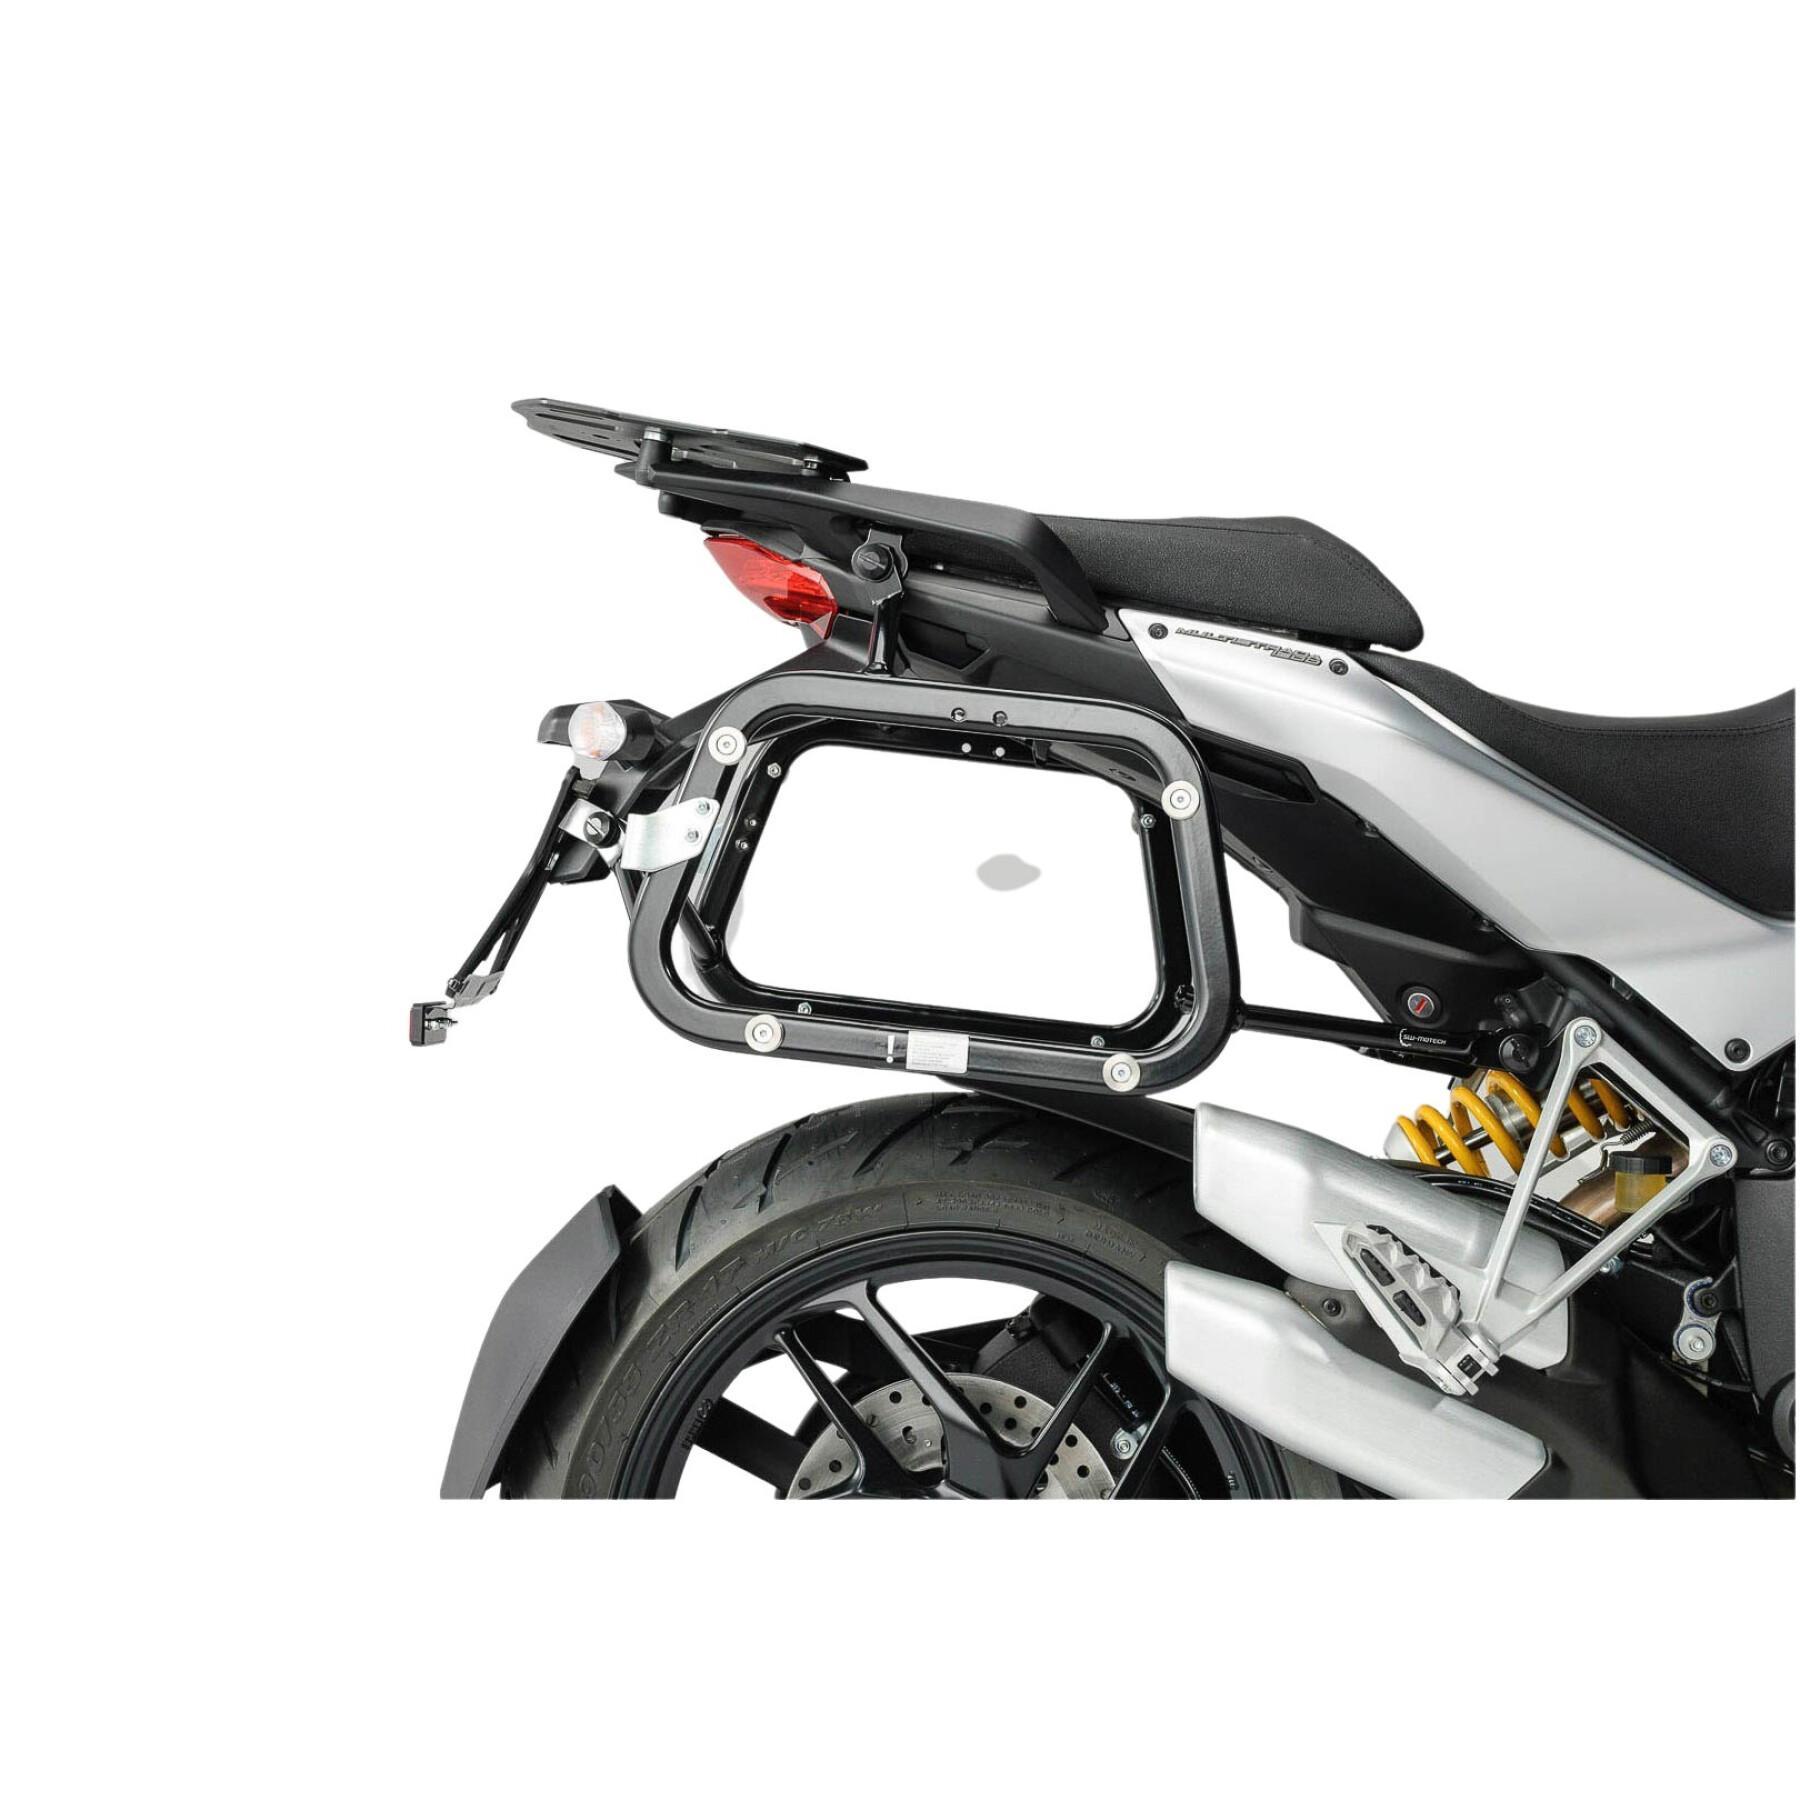 Wspornik kufra bocznego motocykla Sw-Motech Evo. Ducati Multistrada 1200 / S (10-14)